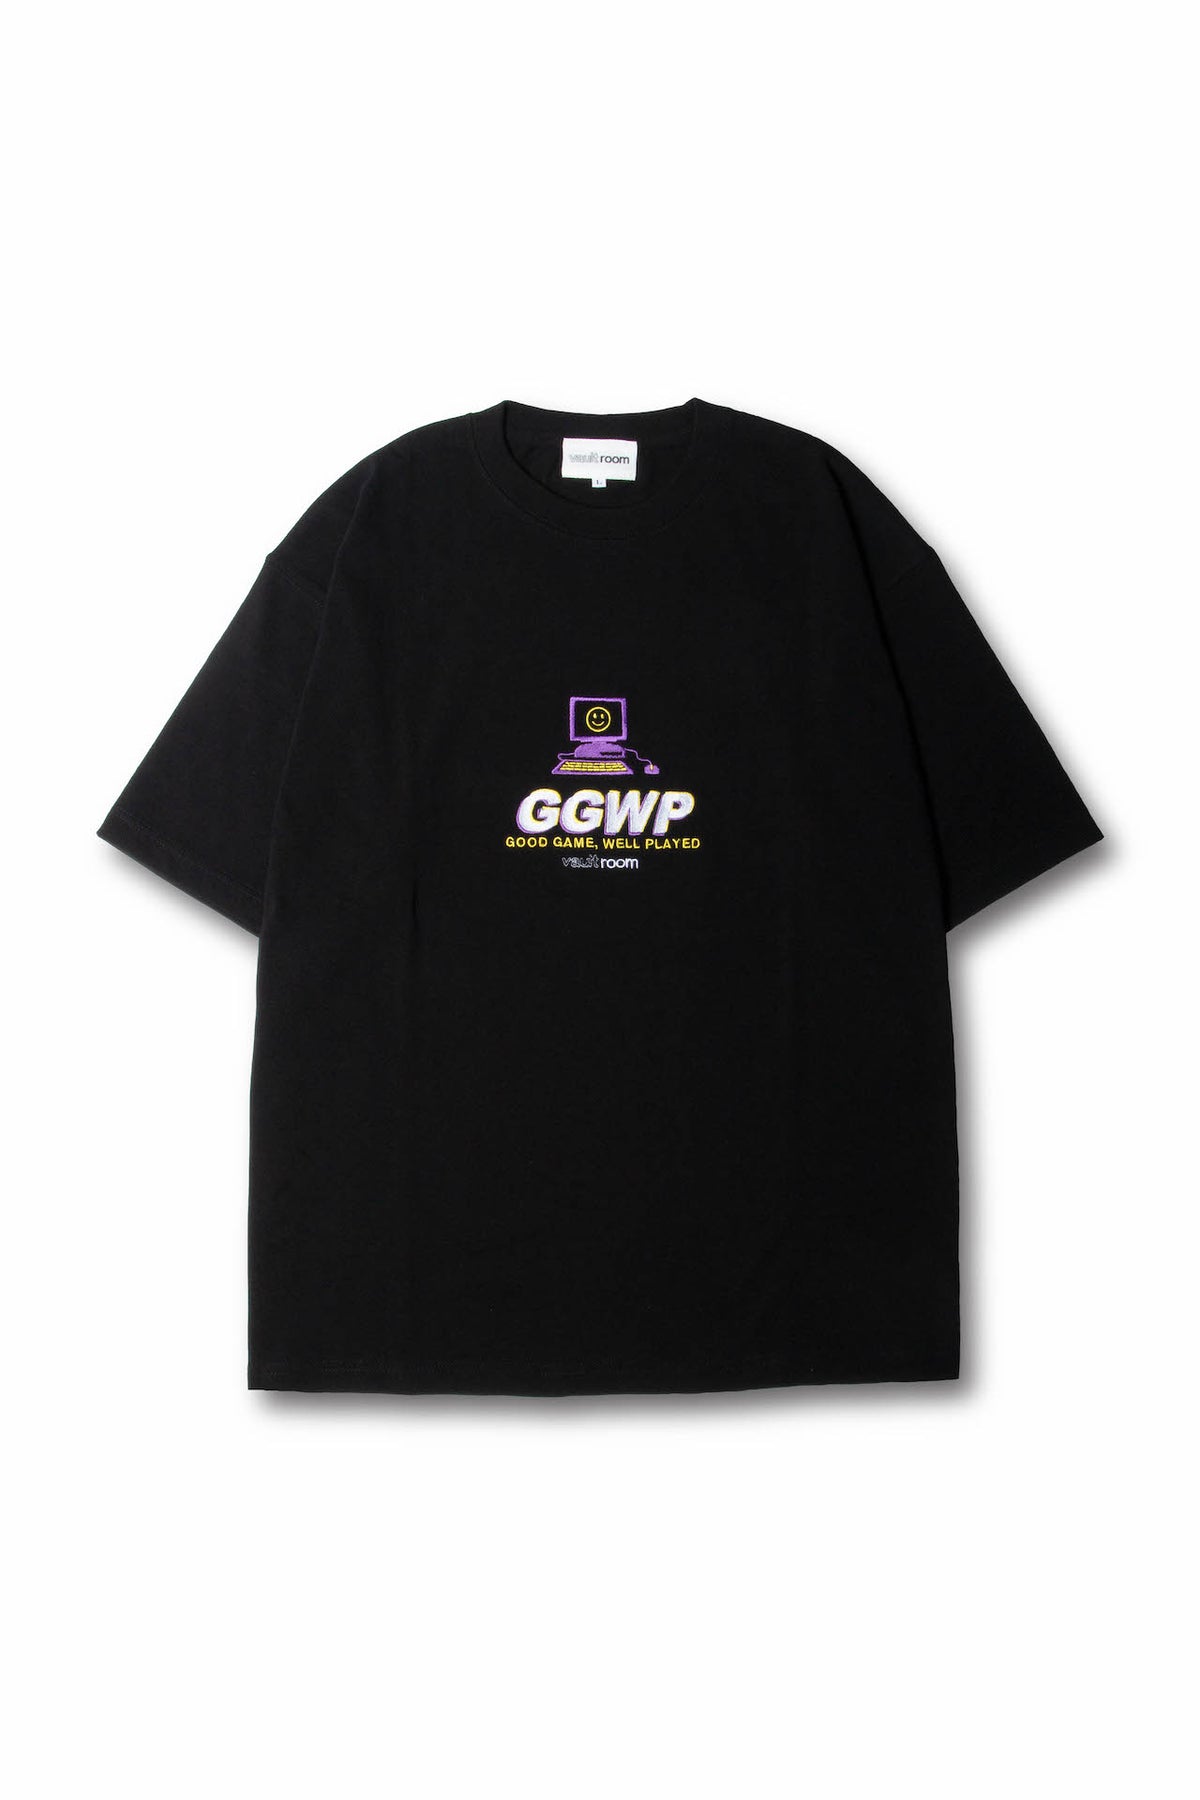 vaultroom GGWP TEE / BLK - Tシャツ/カットソー(半袖/袖なし)